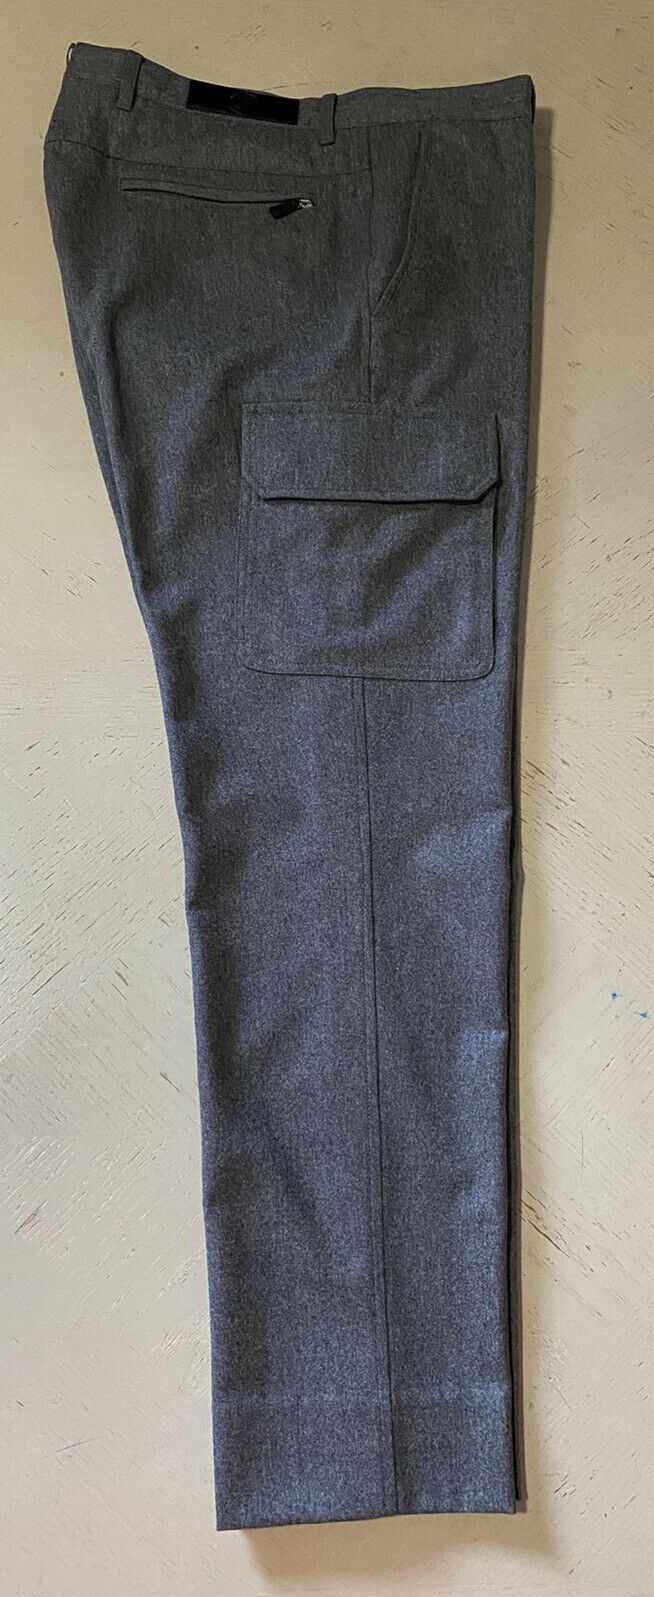 New $1195 Ermenegildo Zegna Slim Fit Dress Pants DK Gray 34 US ( 50 Eu )